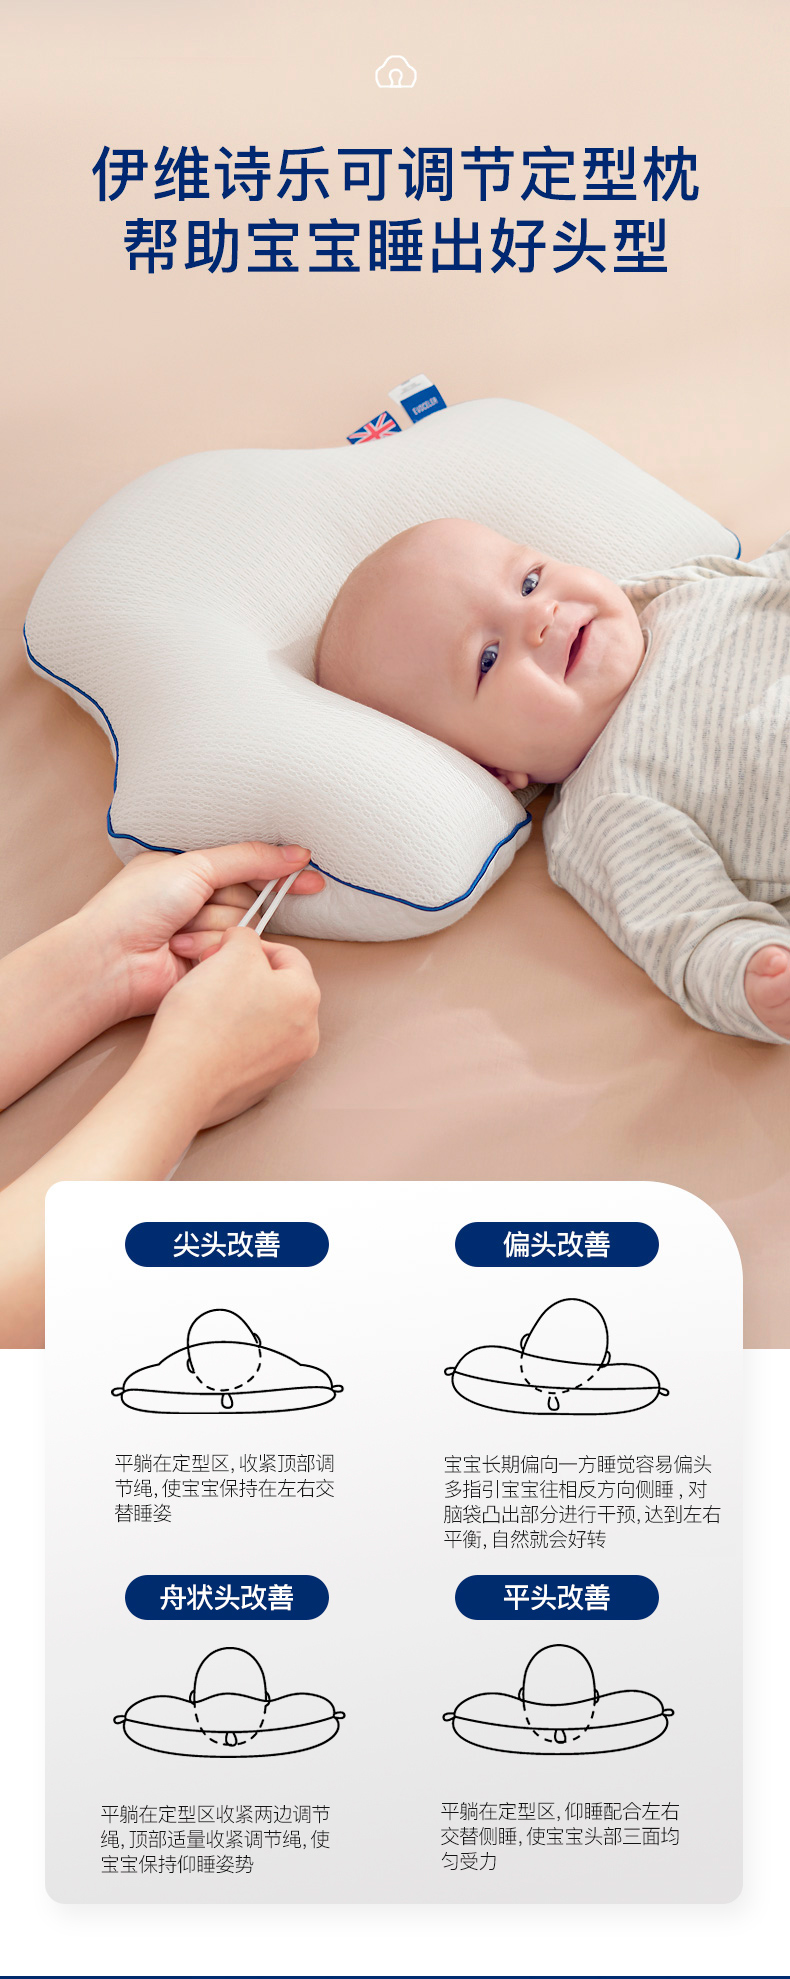 \"伊维诗乐婴儿定型枕,产品编号106708\"/